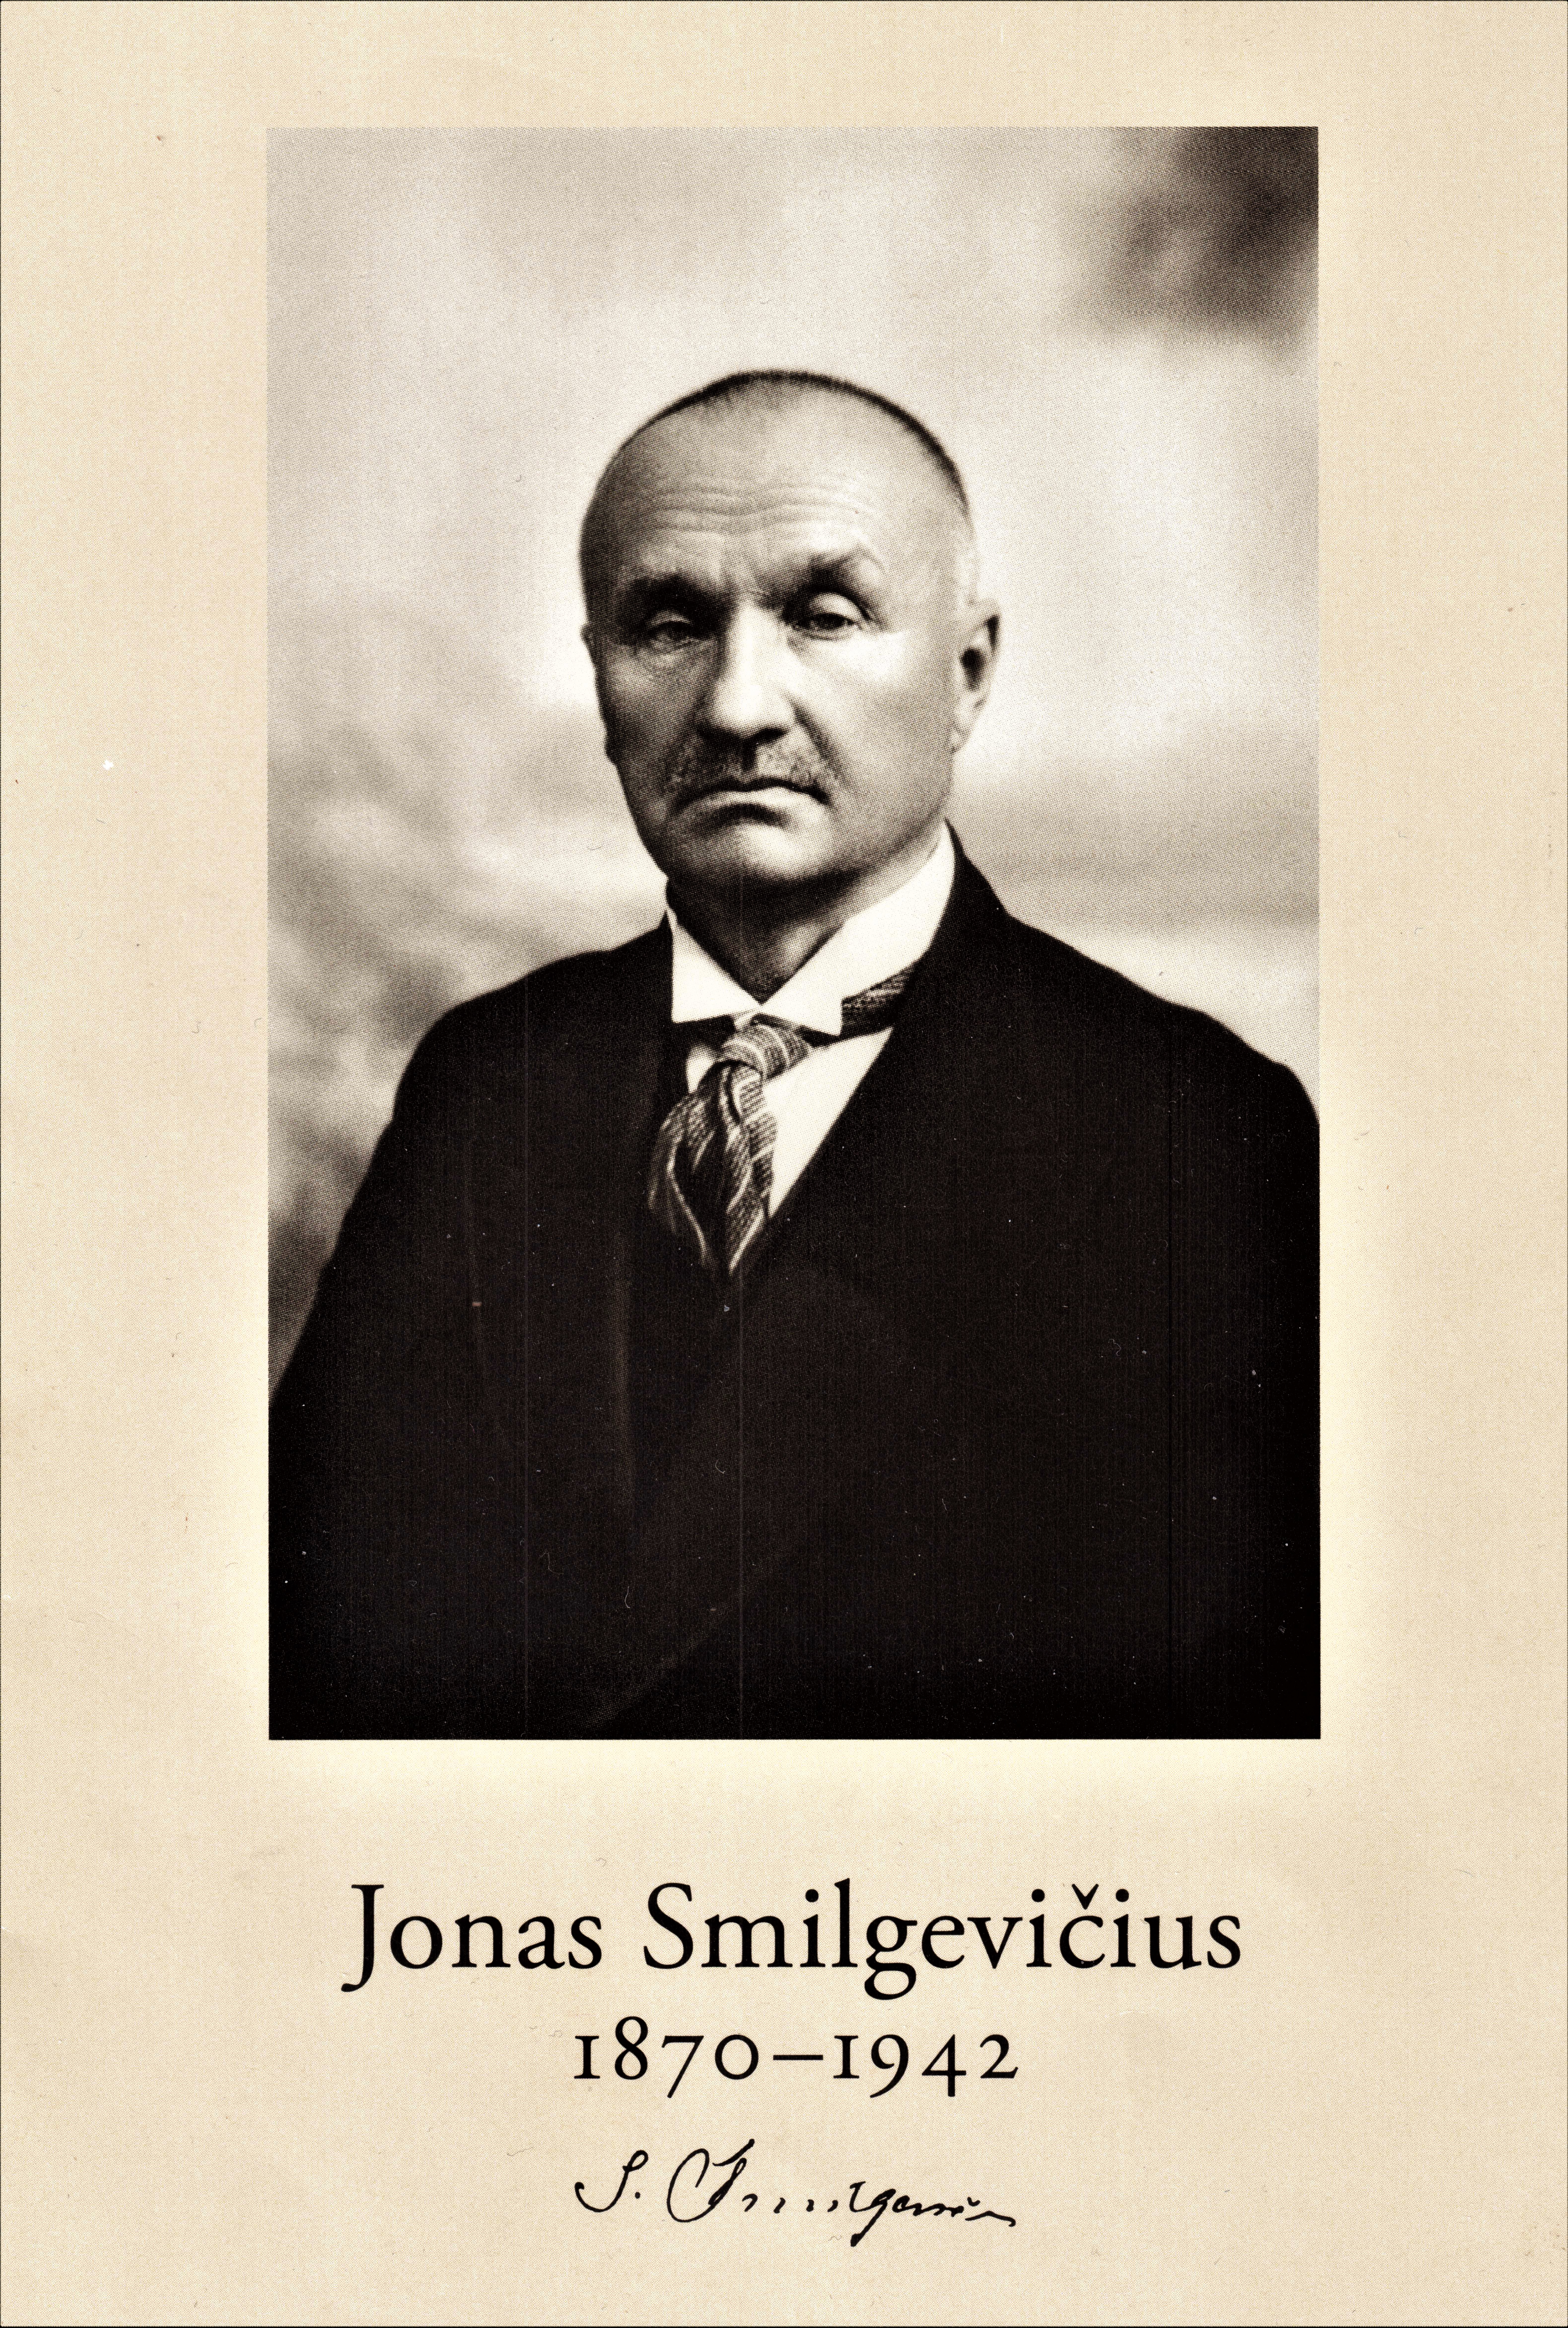 Istoriko Algirdo Grigaravičiaus monografija „Jonas Smilgevičius – kitoks signataras“ (IV)